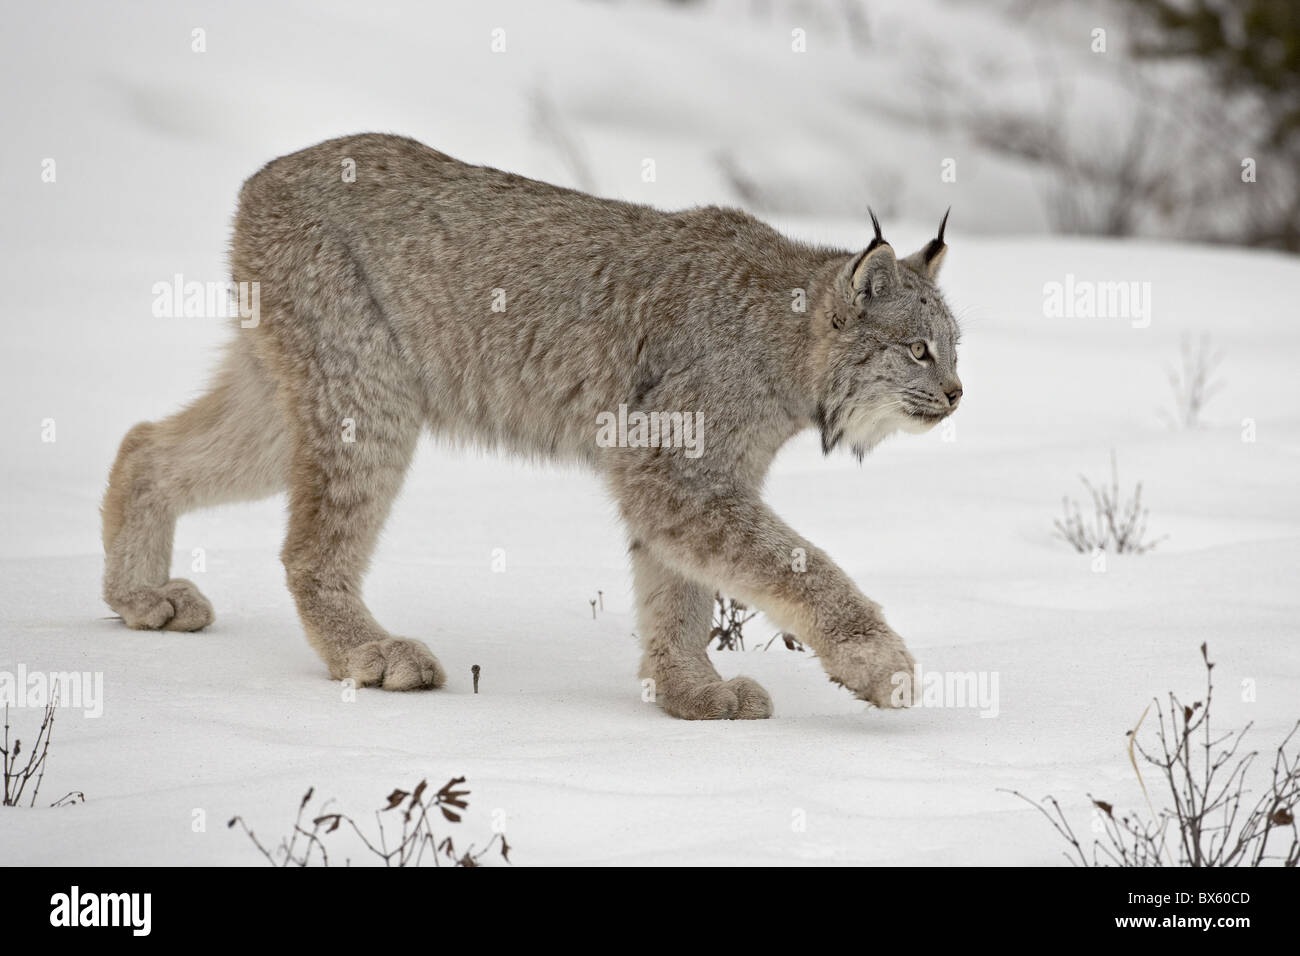 Kanadischer Luchs (Lynx Canadensis) im Schnee in Gefangenschaft, in der Nähe von Bozeman, Montana, Vereinigte Staaten von Amerika, Nordamerika Stockfoto